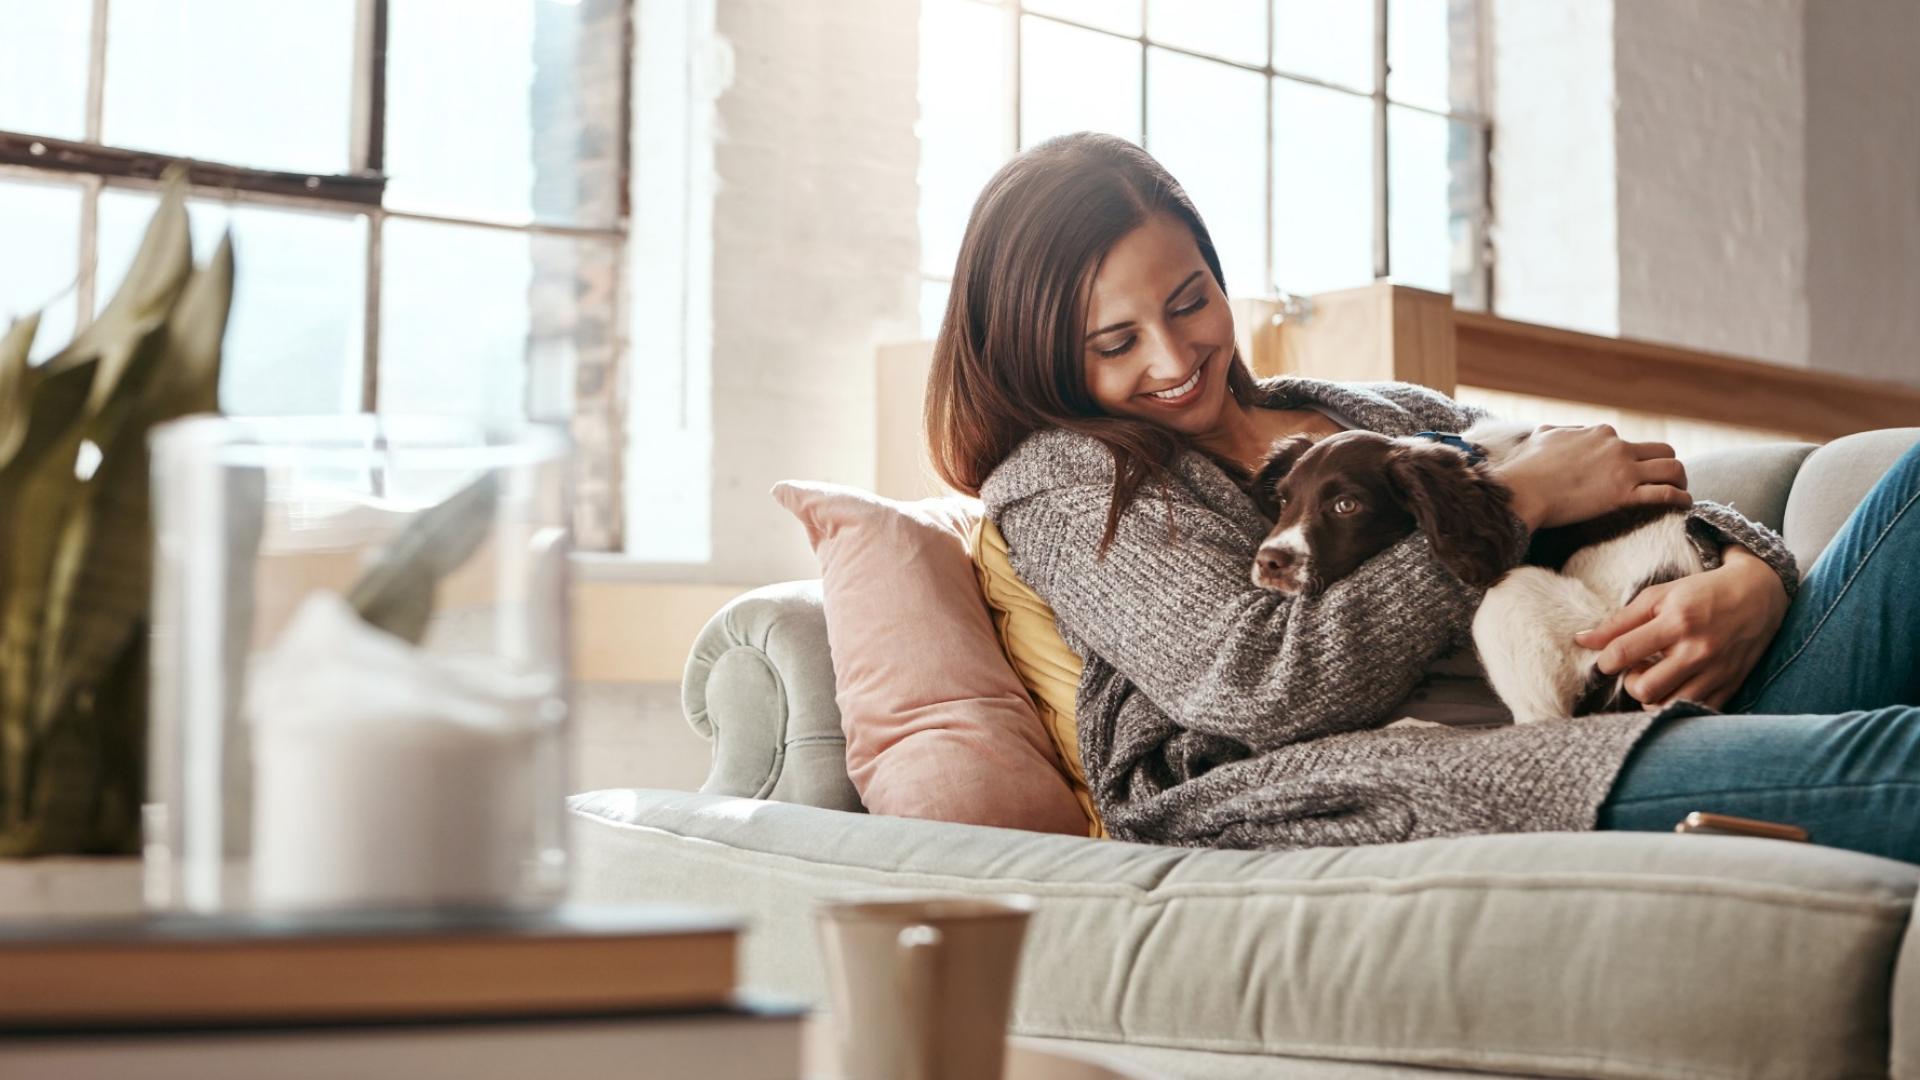 Auf dem Bild ist eine junge Frau auf ihrer Couch zu sehen, die mit ihrem Hund kuschelt.